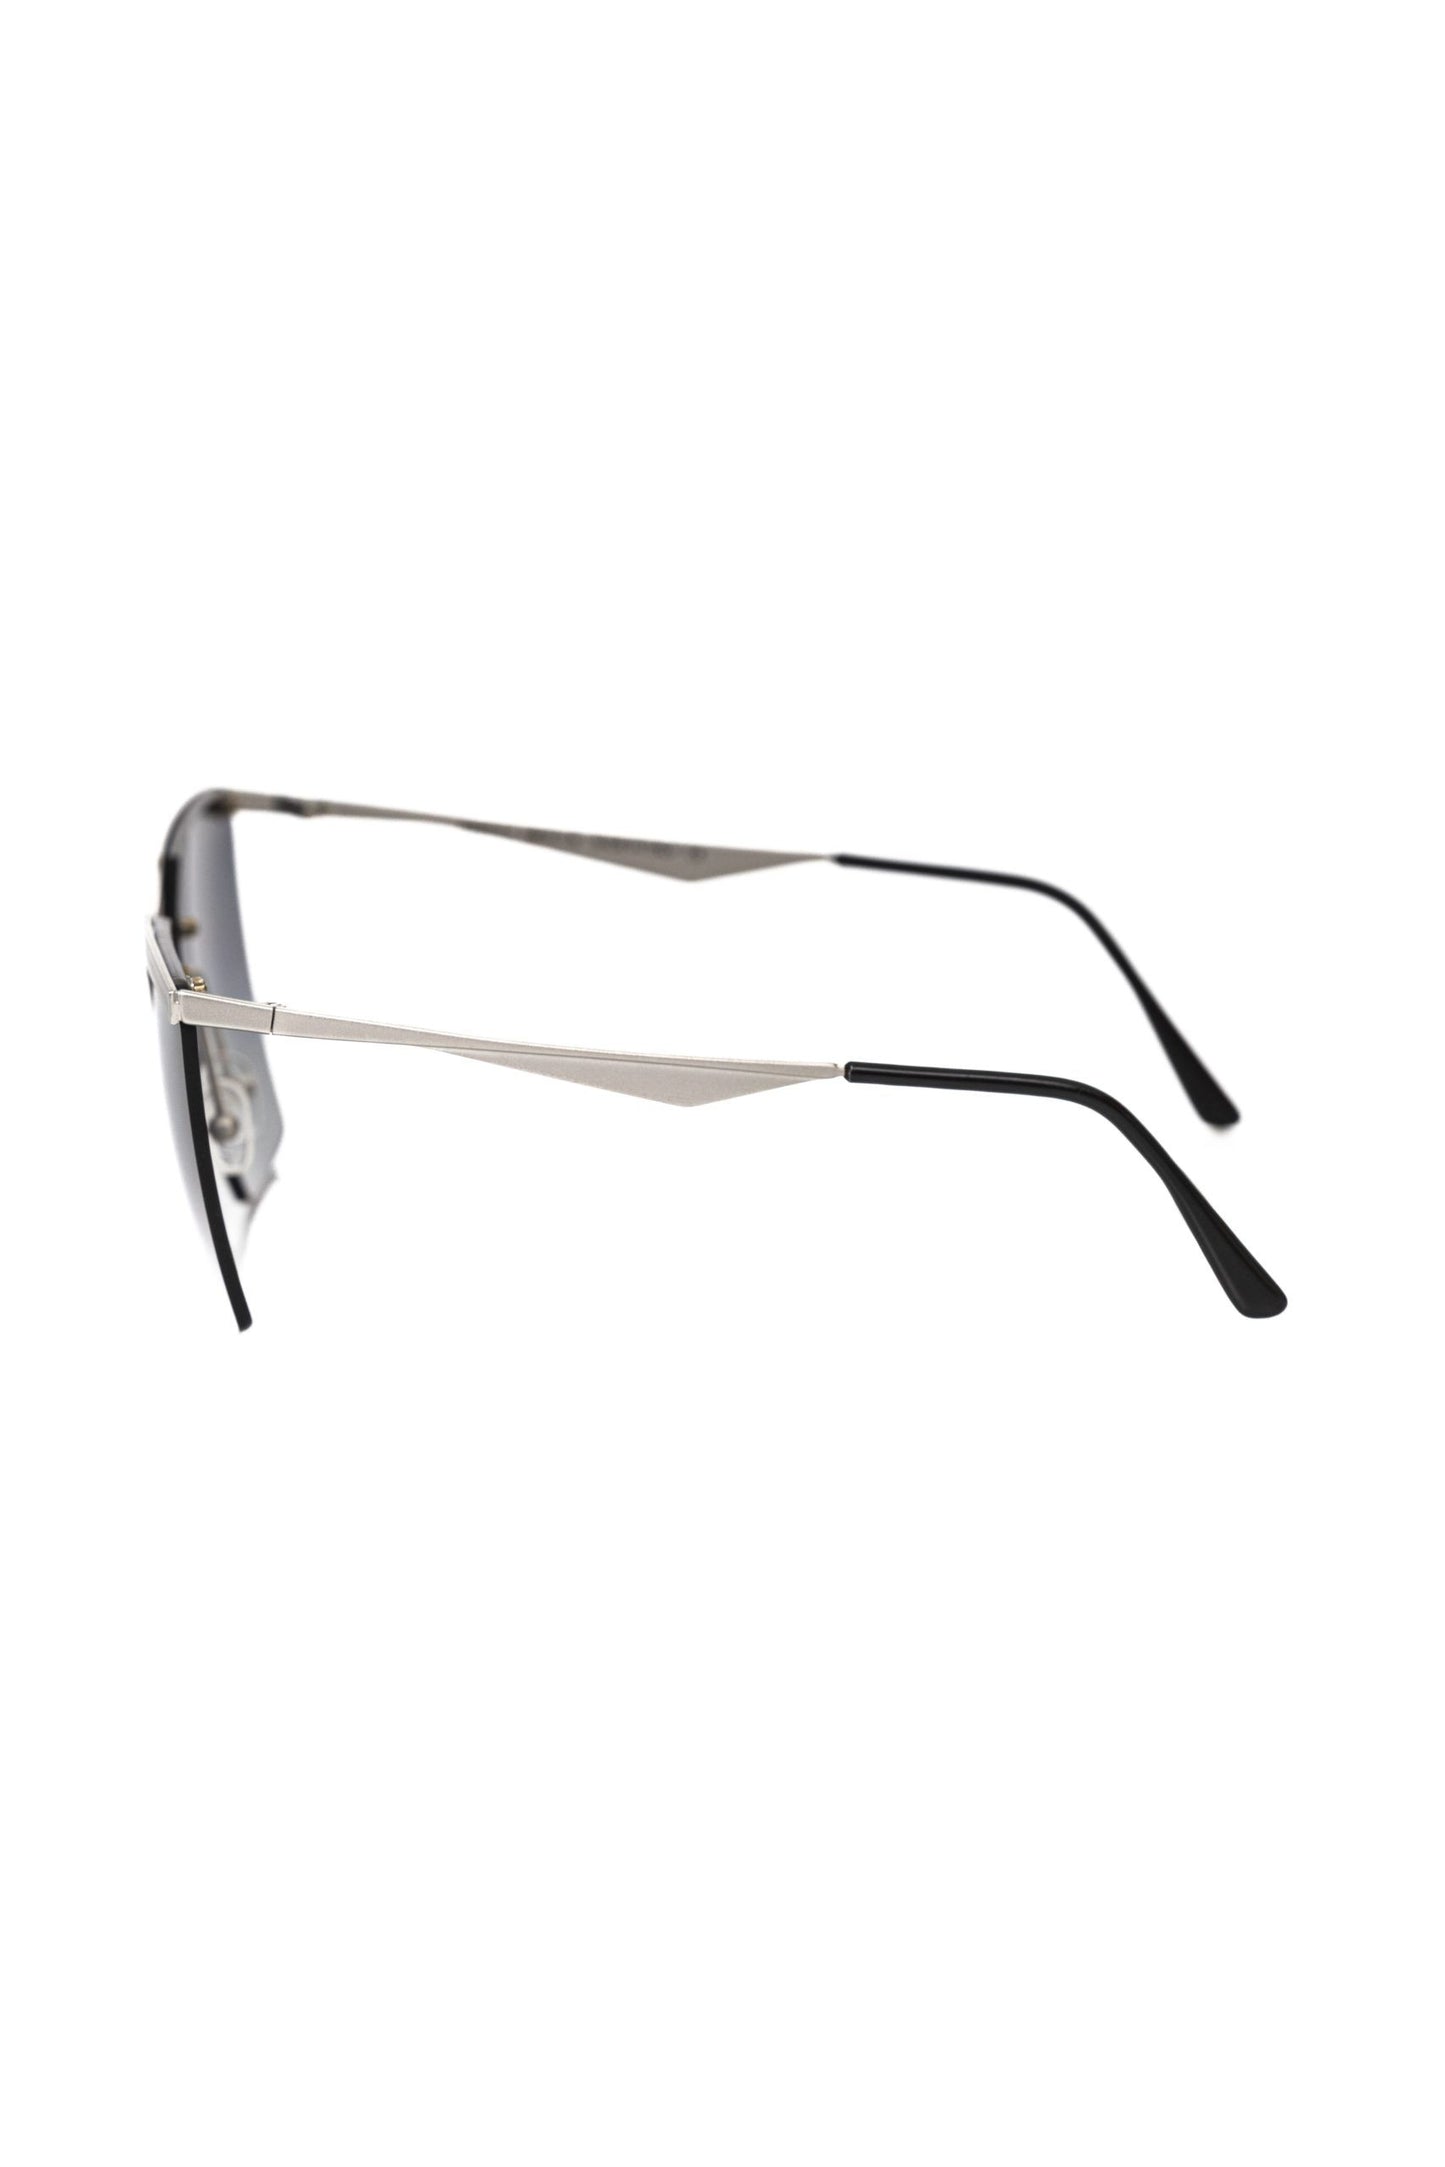 Frankie Morello FRMO-22087 Silver Metallic Fibre Sunglasses